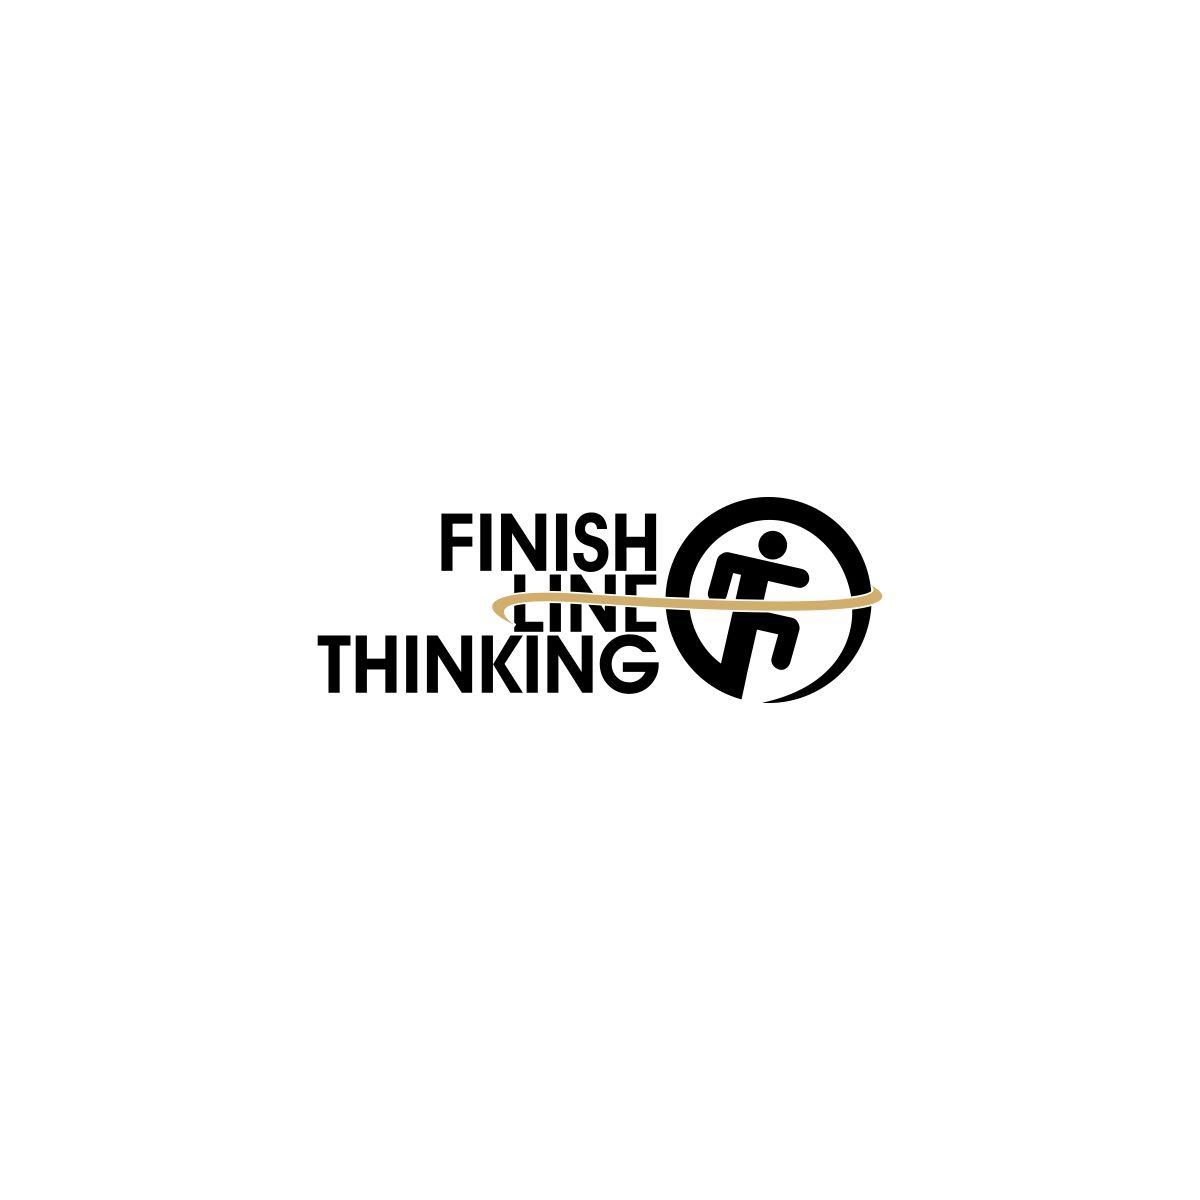 Finishline Logo - Professional, Upmarket, Weight Logo Design for Finish Line Thinking ...